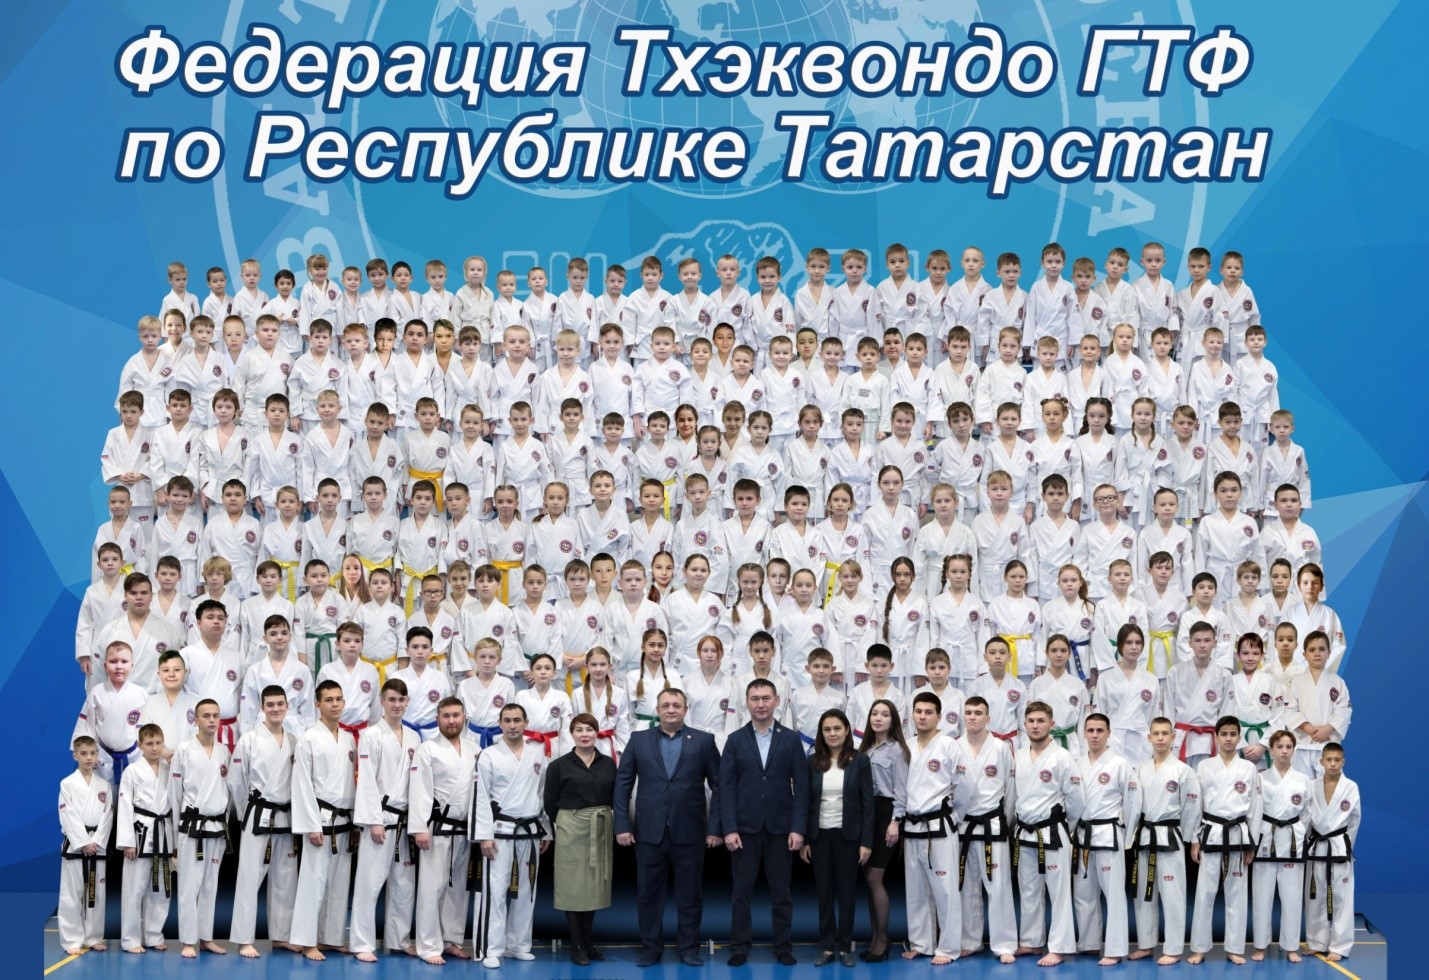 Тхэквондо ГТФ - Центр спортивной подготовки Республики Татарстан